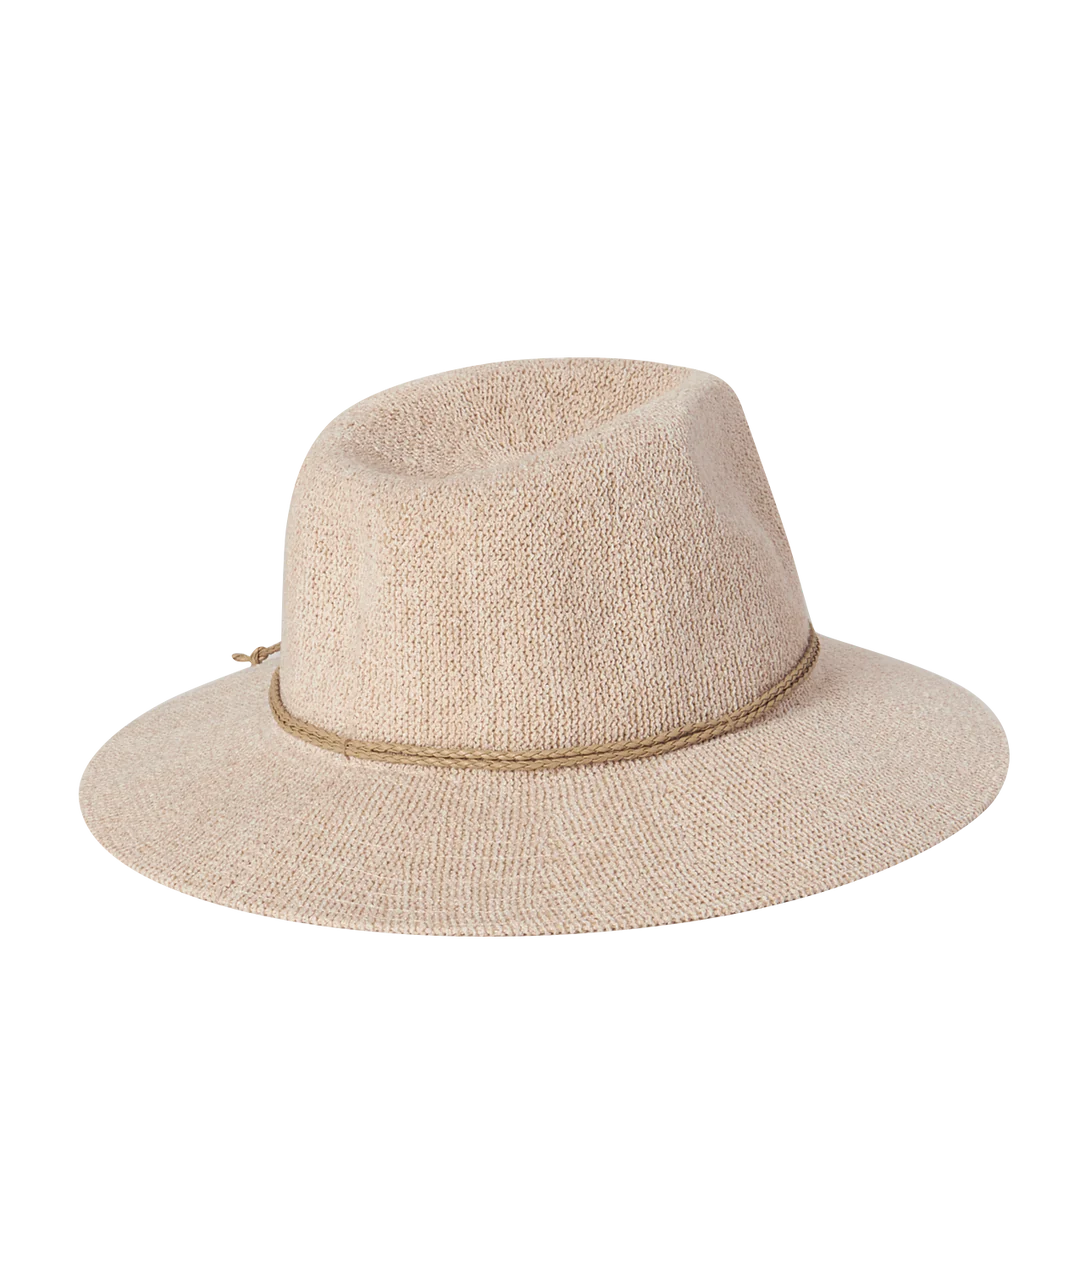 Women's Safari Hat - Sadie